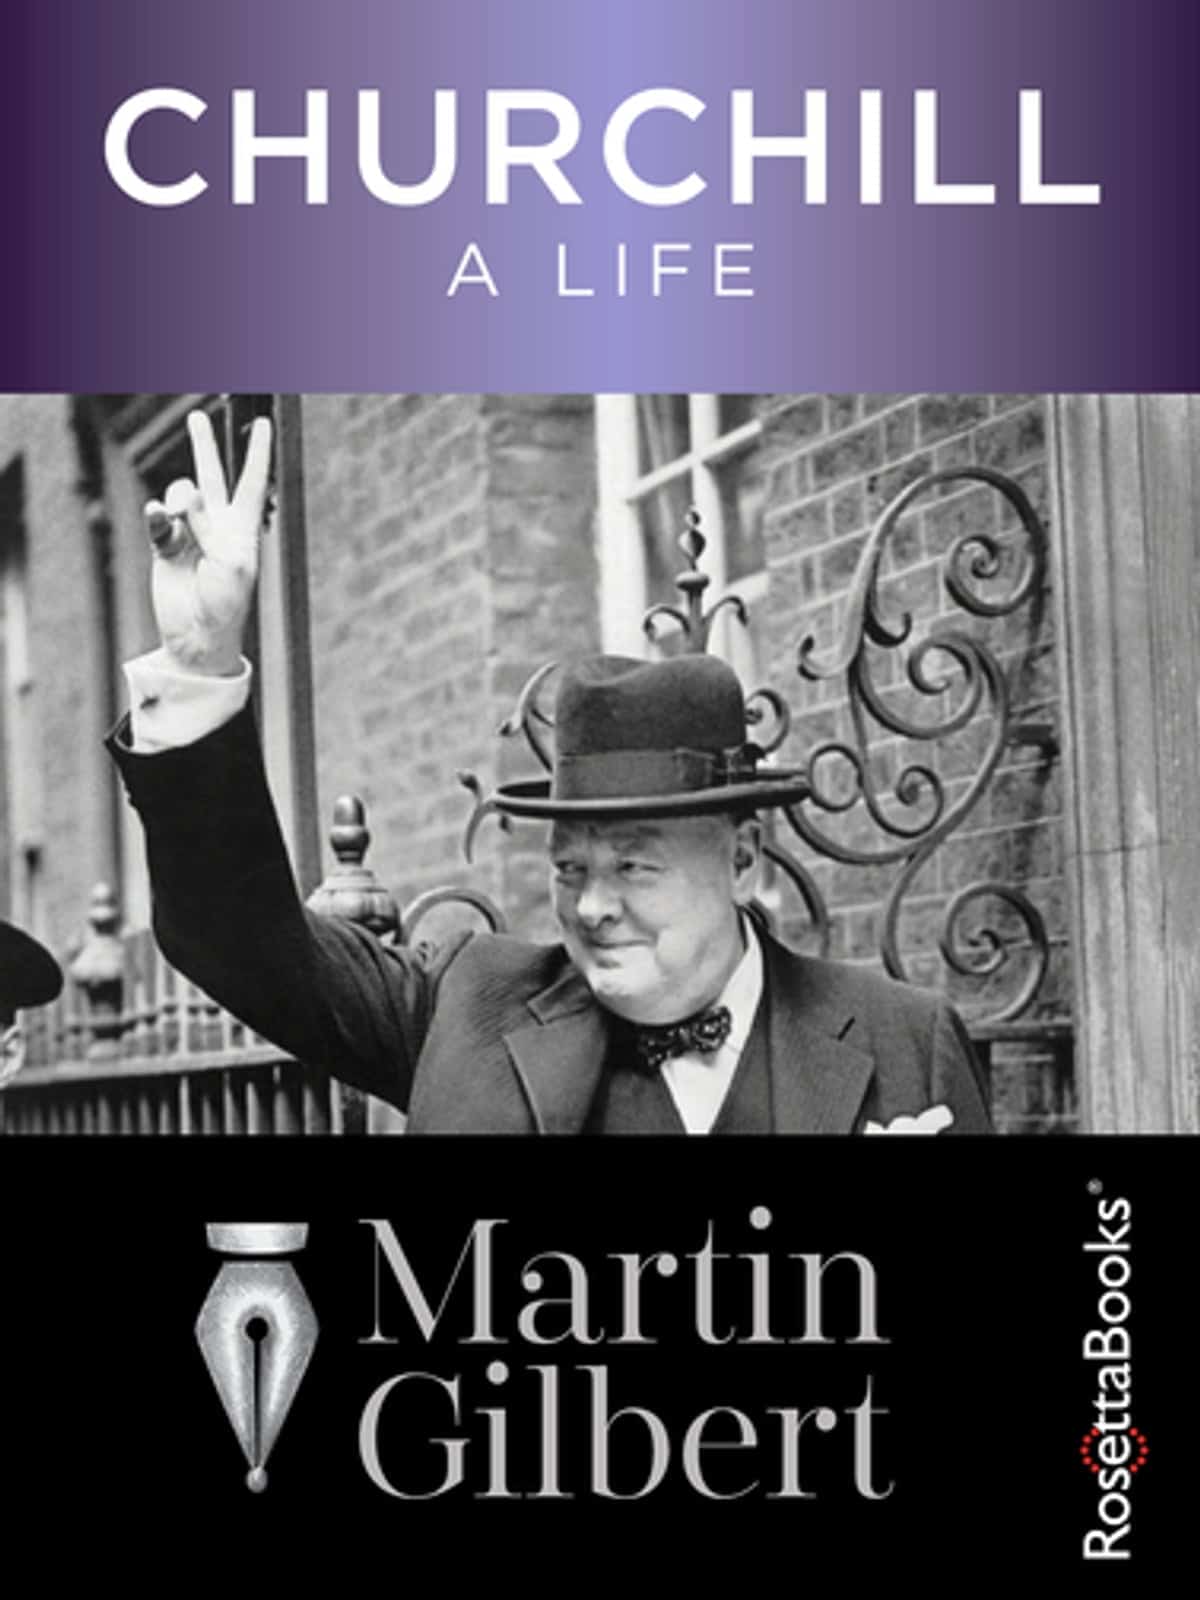 Churchill – A Life by Martin Gilbert